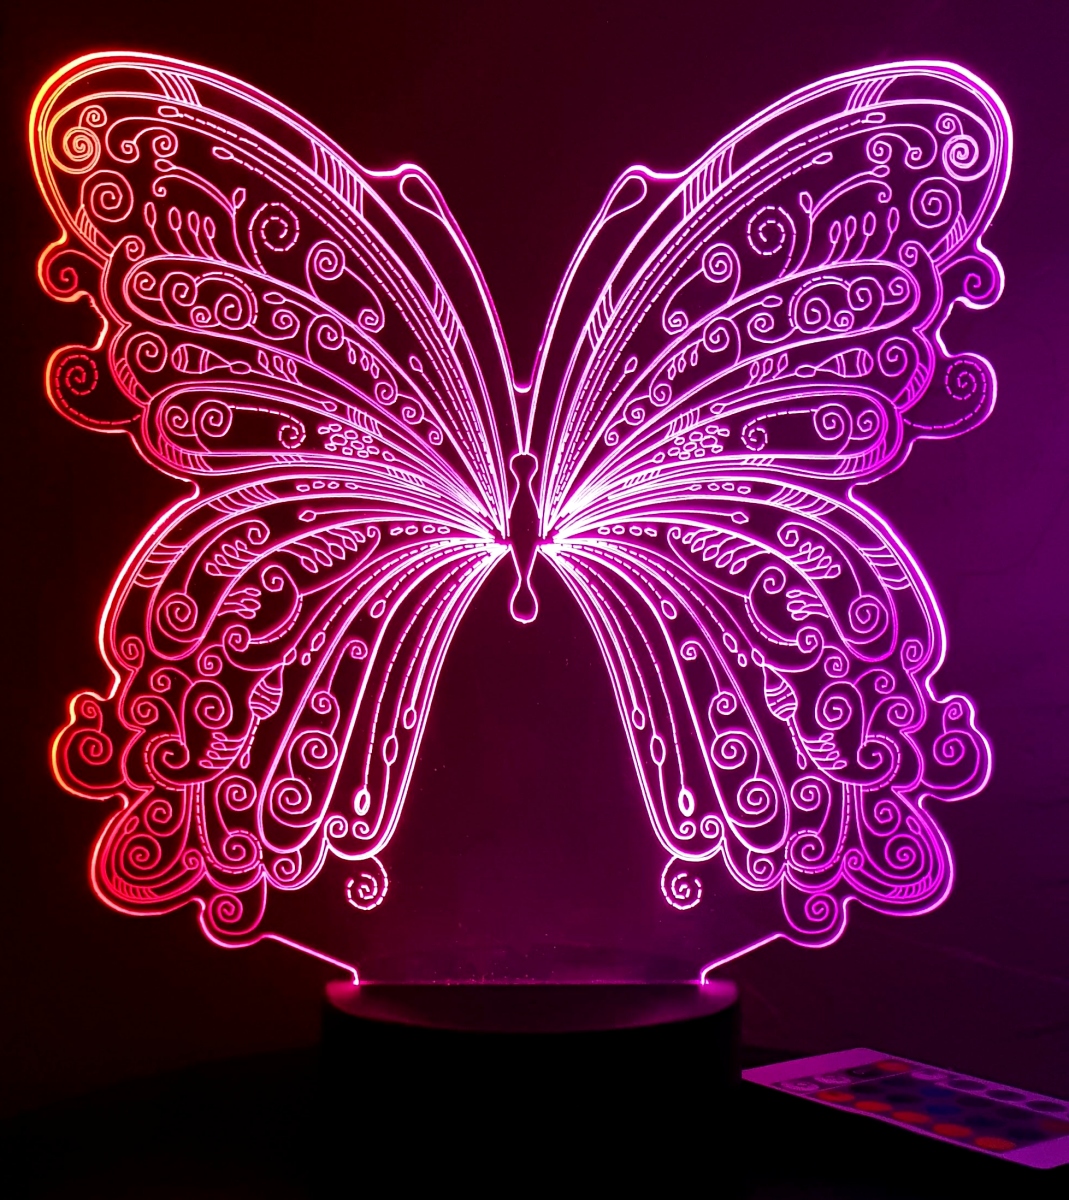 Lampe enfant papillon - Fabrique Casse Noisette